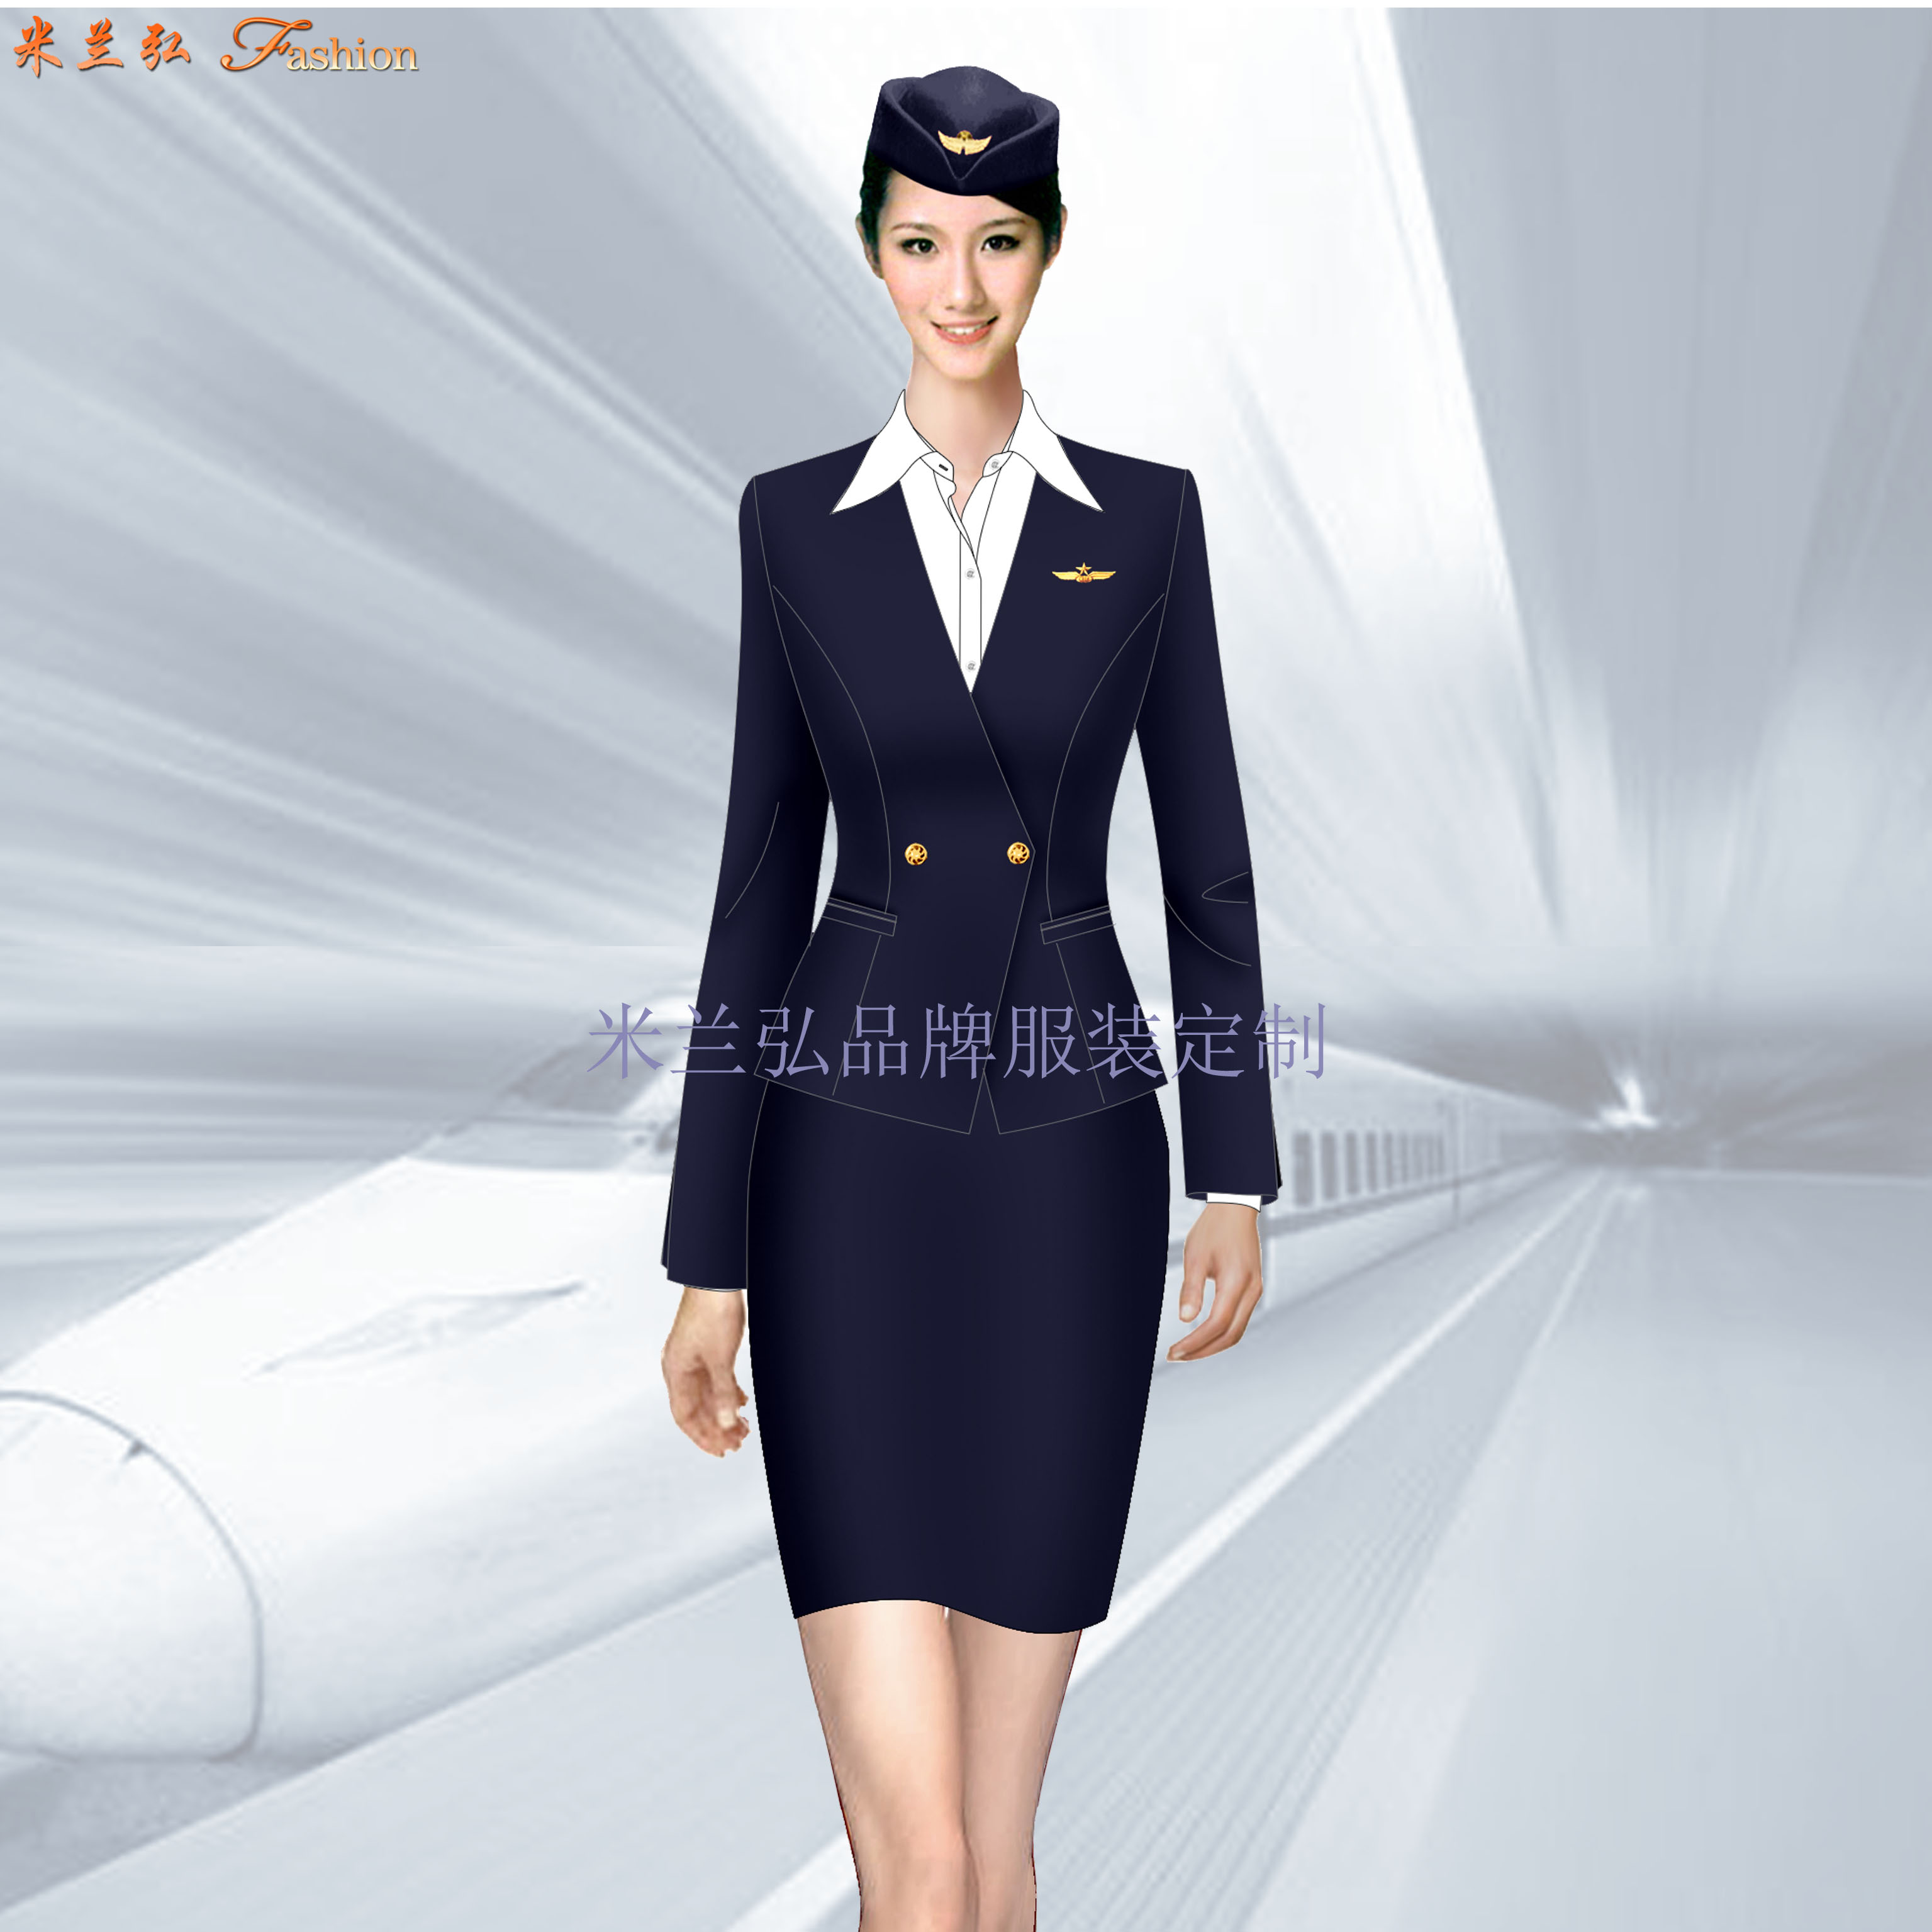 「女装空姐服定做」定做空姐服厂家-米兰弘品牌服装-5